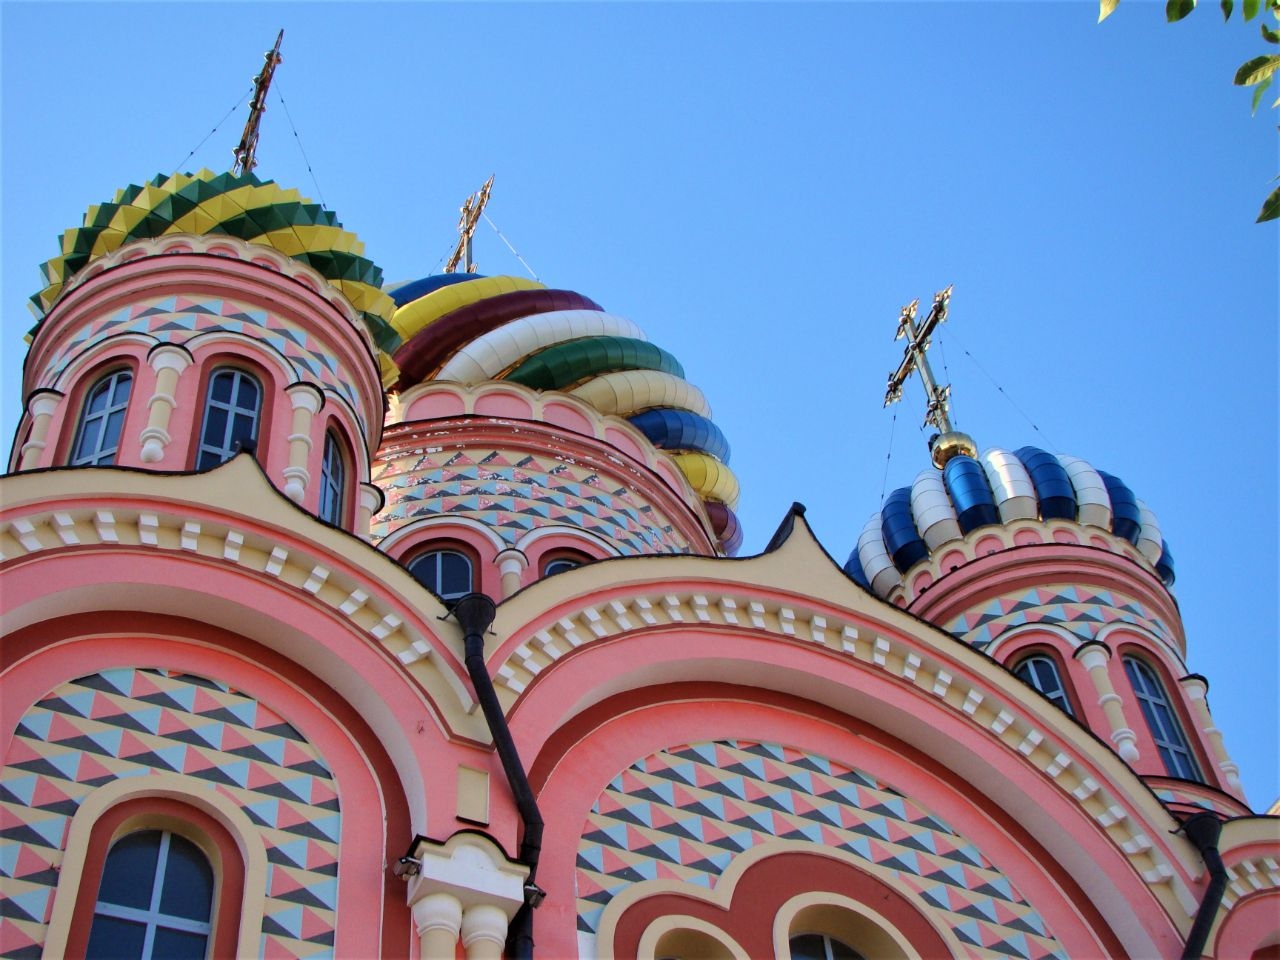 Тамбовский Вознесенский женский монастырь / Tambov Ascension Convent